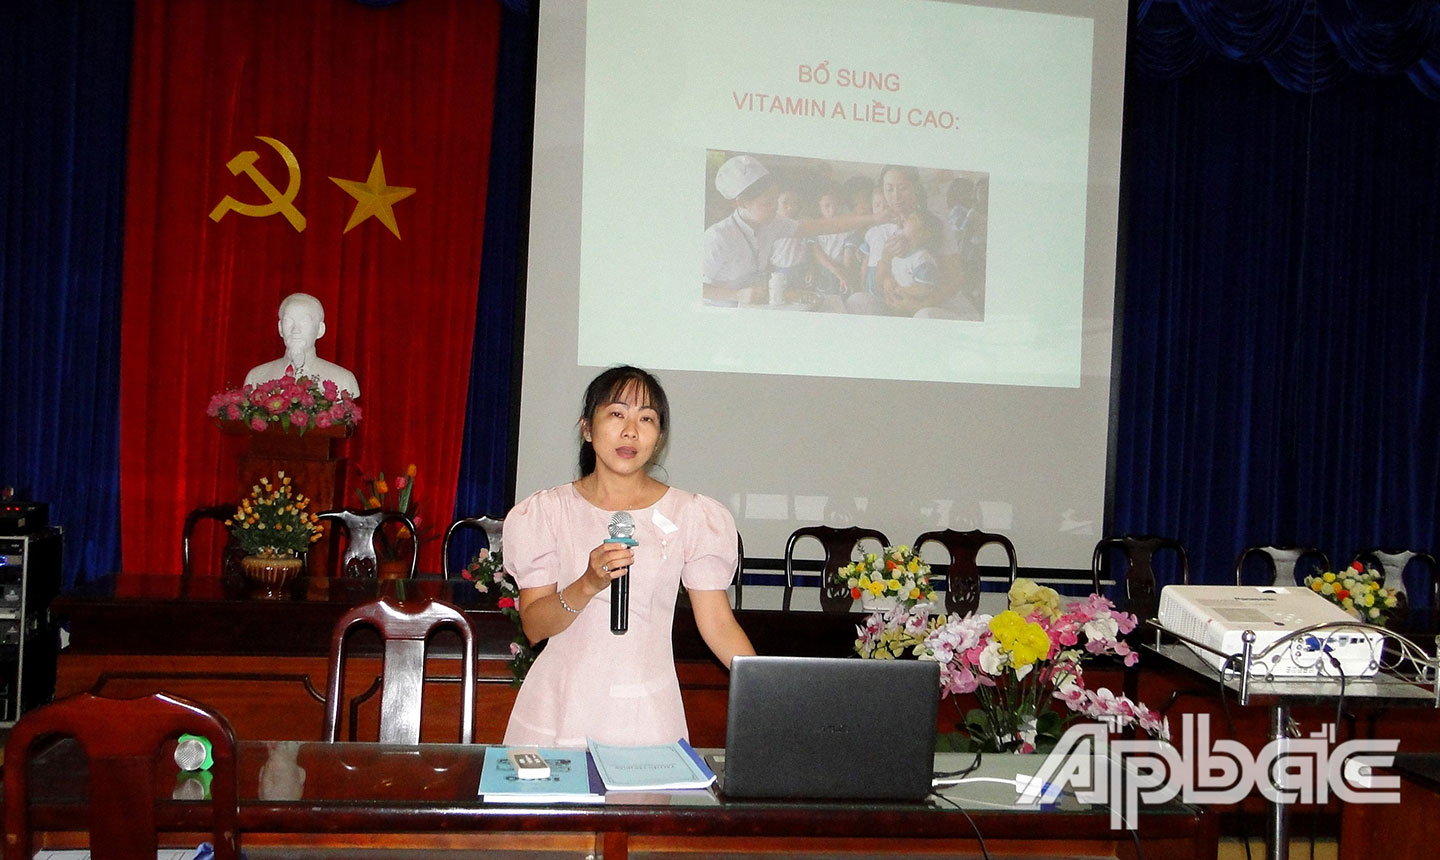 Thạc sĩ Thái Ngọc Hạnh, Phó trưởng Khoa Sức khỏe sinh sản và Dinh dưỡng, tập huấn Triển khai Chiến dịch bổ sung vitamin A liều cao cho trẻ 6 – 36 tháng.